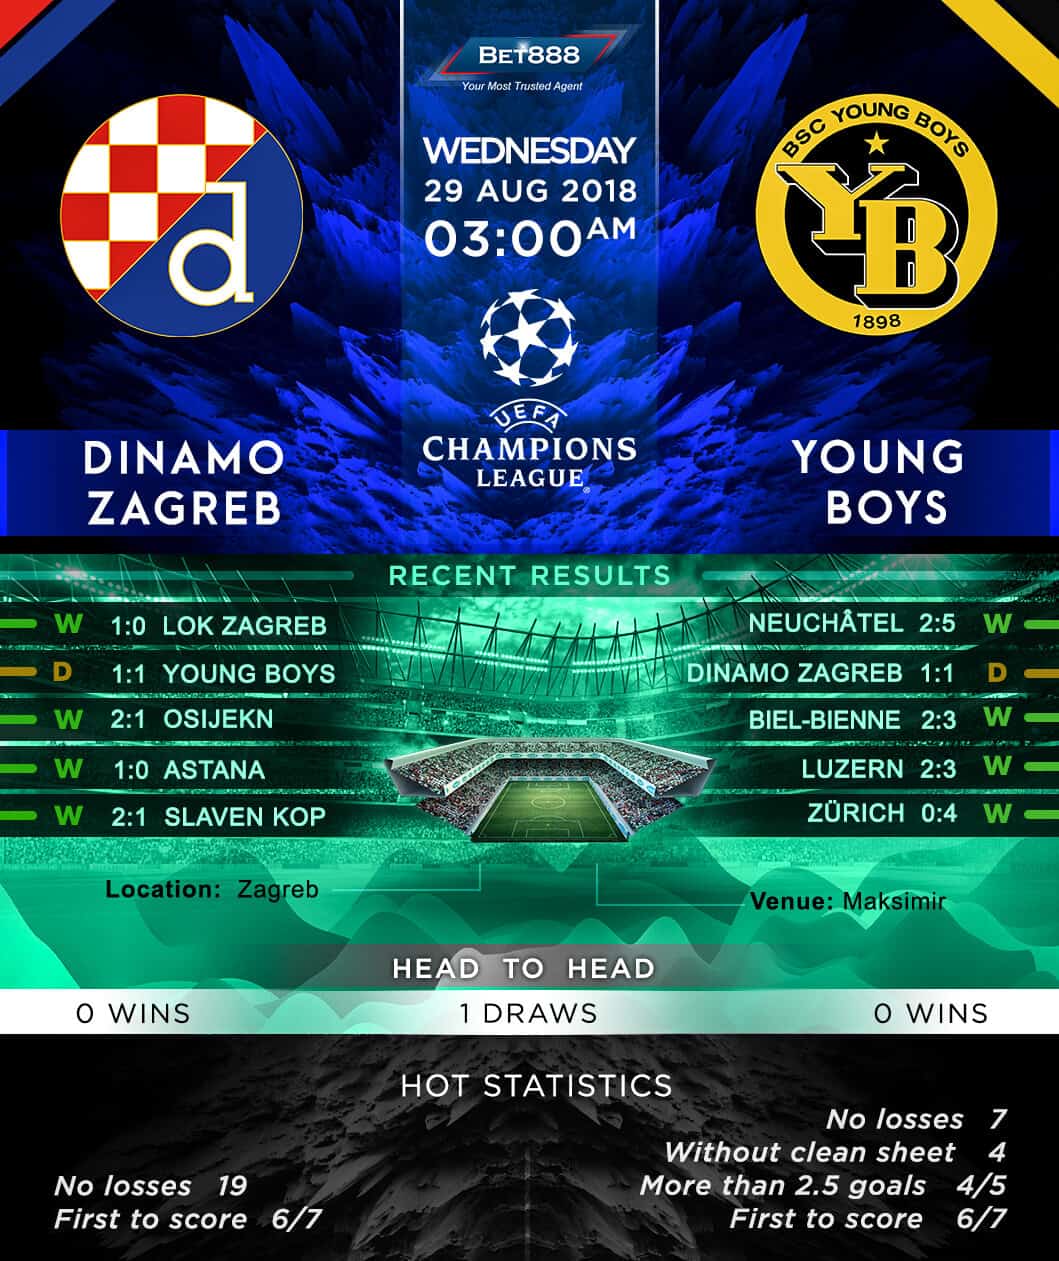 Dinamo Zagreb vs Young Boys 29/08/18